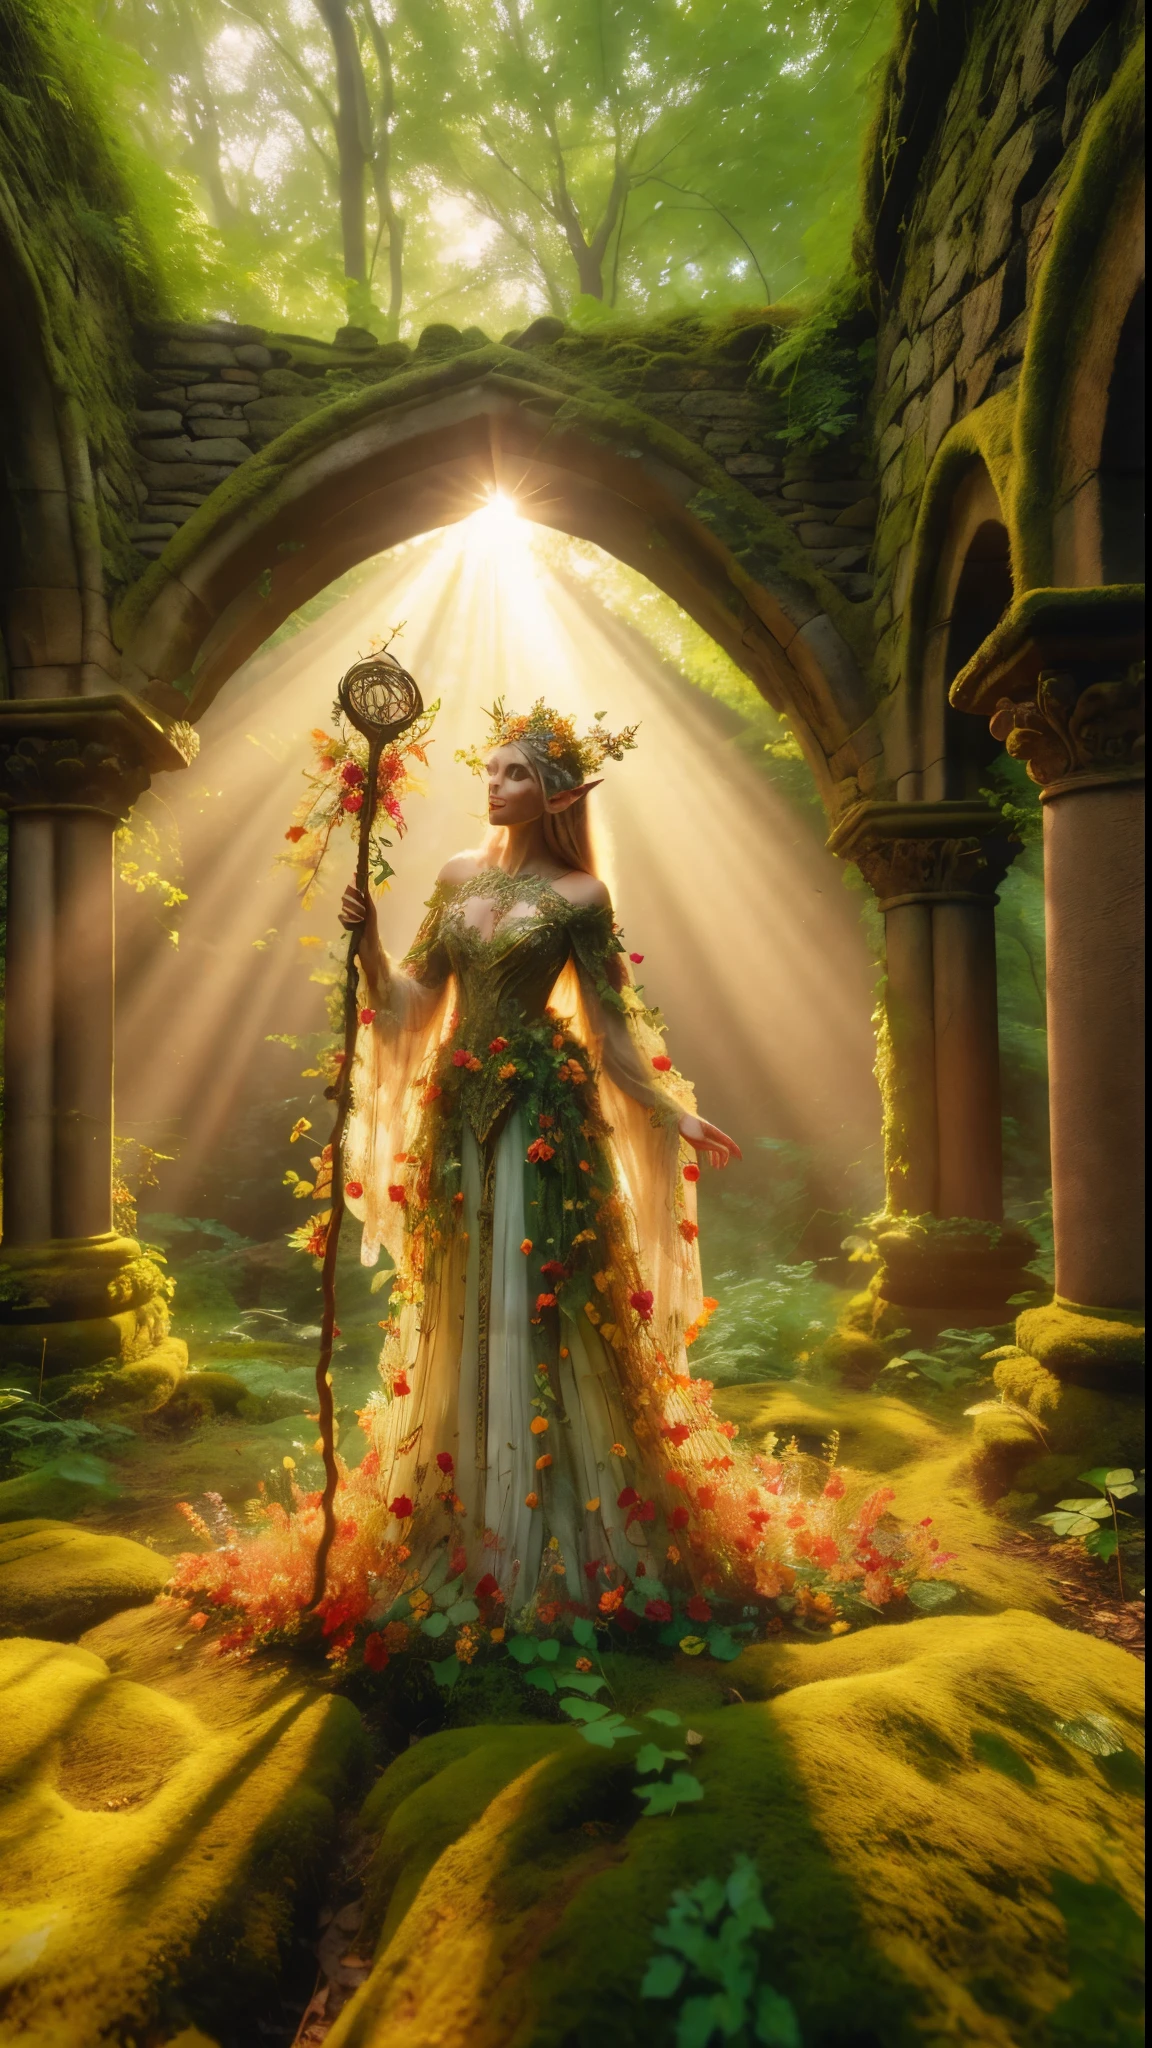 まだら模様の, 古代の森の遺跡, エルフの王女は堂々と立っている, 木々の間から差し込む暖かい陽光の中、彼女の王笏は高く掲げられている, 彼女の威厳の周りに金色の光輪を投げかける. 彼女の美しい夏服, 魔法の服は、小さなミニチュアの赤い多色の花で覆われた柔らかな光の中できらめきます, エンドウ豆の緑と黄色の小さな葉のつる植物, 豊かな葉と蔓が彼女を取り囲んでいる, 豊かな環境を創る. カメラは王女の顔に鮮明に焦点を合わせている, 三分割法で彼女を2つの対角線の交点に配置する. ゴールデンアワーに撮影, この光景は幻想的な雰囲気を醸し出している, 鑑賞者をこの神秘的な世界へと誘う, ファンタジー, より良い_手, レオナルド, アンジェラ・ホワイト, 強化する